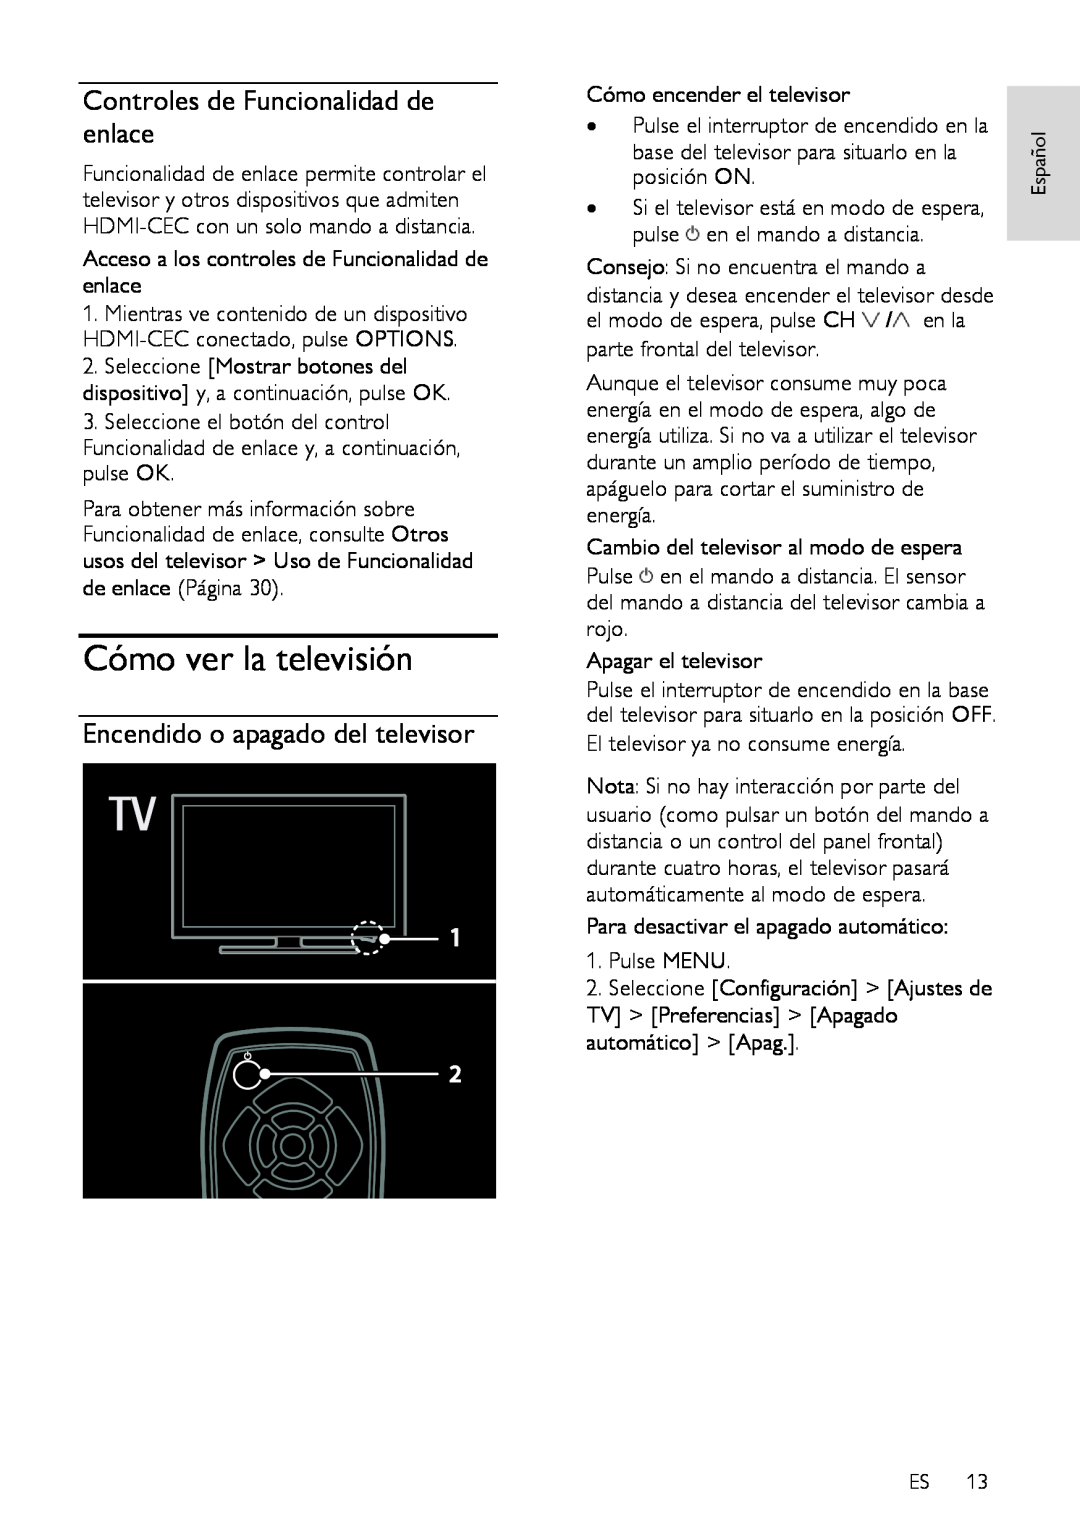 Sharp LE632E, LX632E manual Cómo ver la televisión, Controles de Funcionalidad de enlace, Encendido o apagado del televisor 